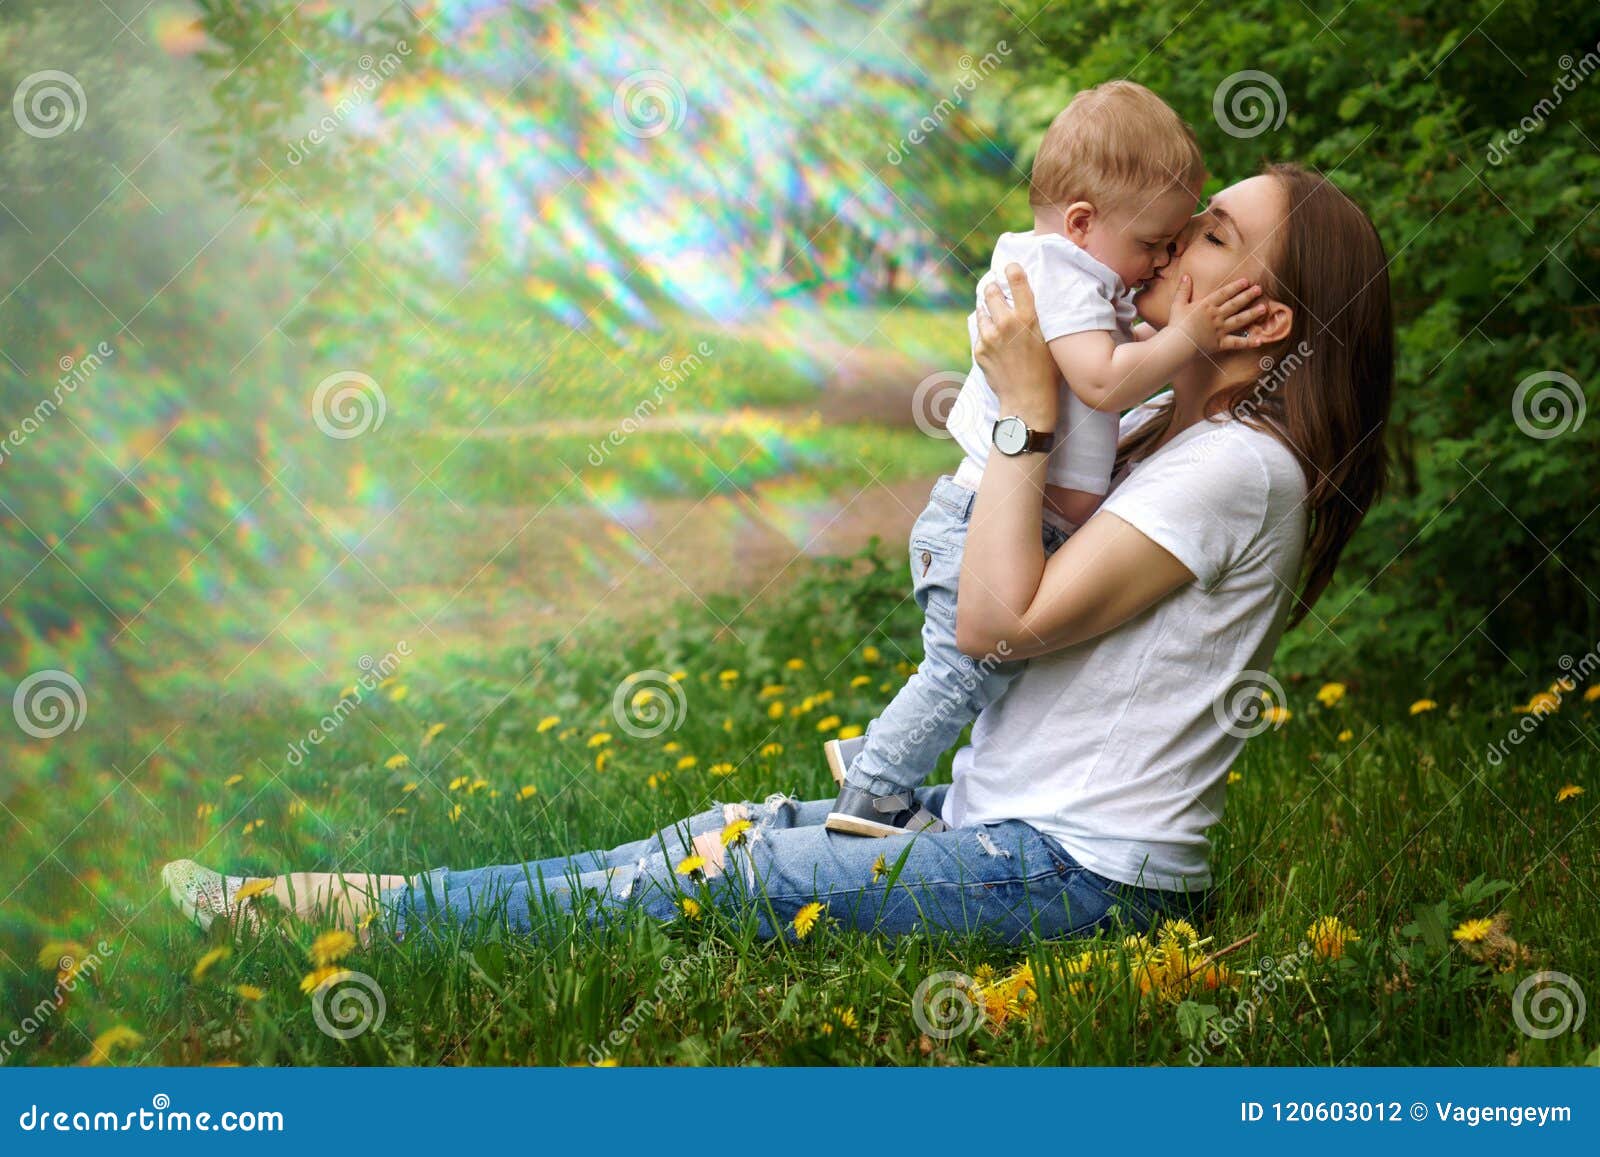 母亲节|你的宝宝正在向你“示爱”，妈妈你听懂了吗？ - 亲子精彩活动 - 婴幼儿奶粉|儿童奶粉|孕妇奶粉-安格奇诺奶粉官网